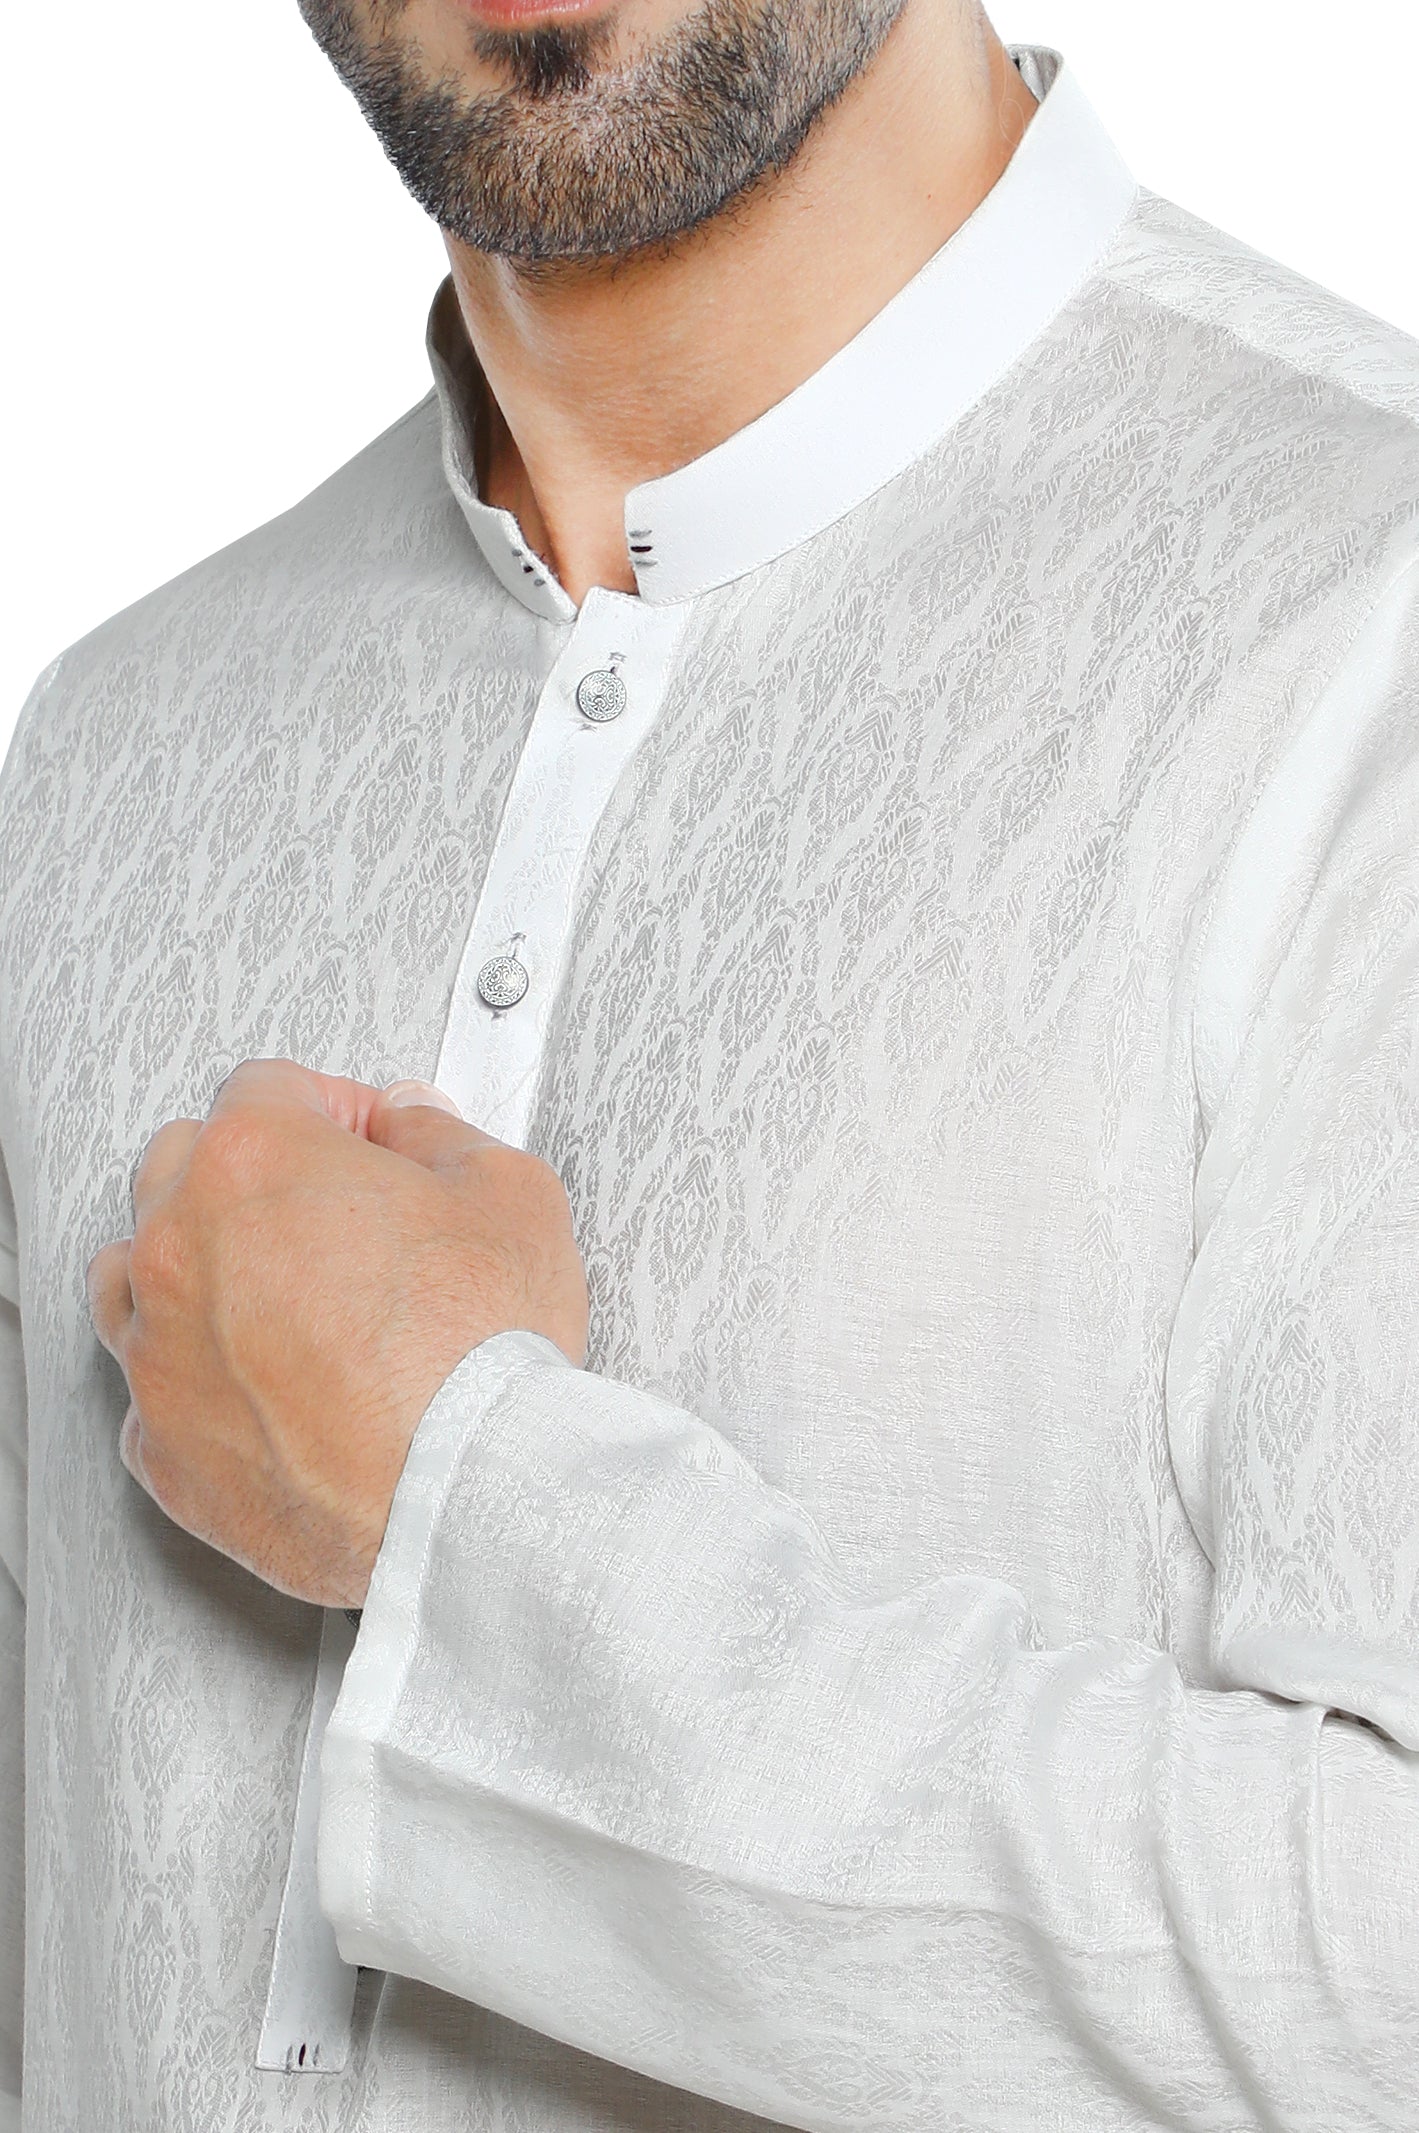 Formal Shalwar Suit for Men SKU: EG2942-OFFWHITE - Diners